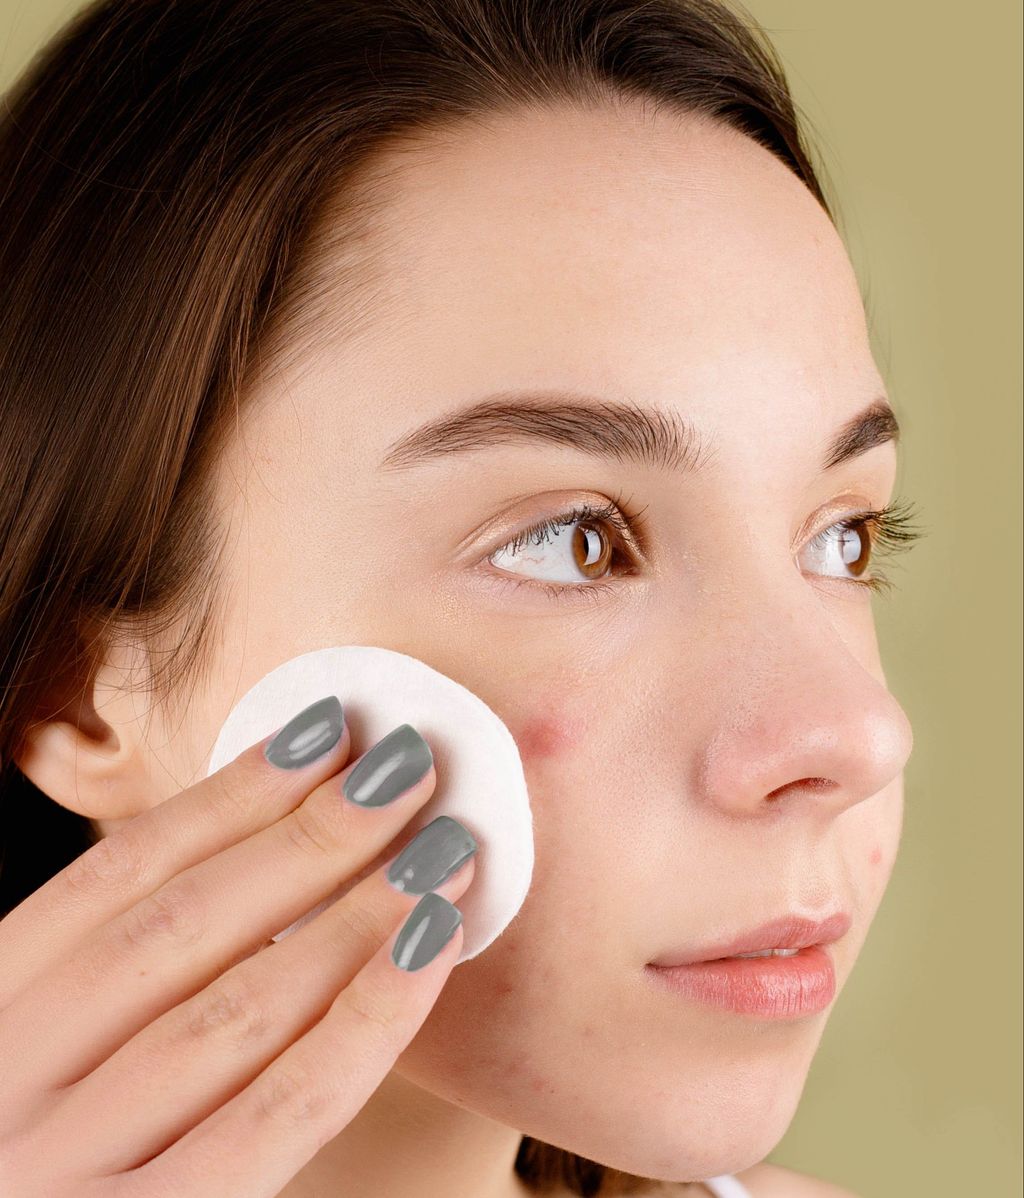 El acné quístico aparece por un exceso de grasa en la piel. FUENTE: Pexels